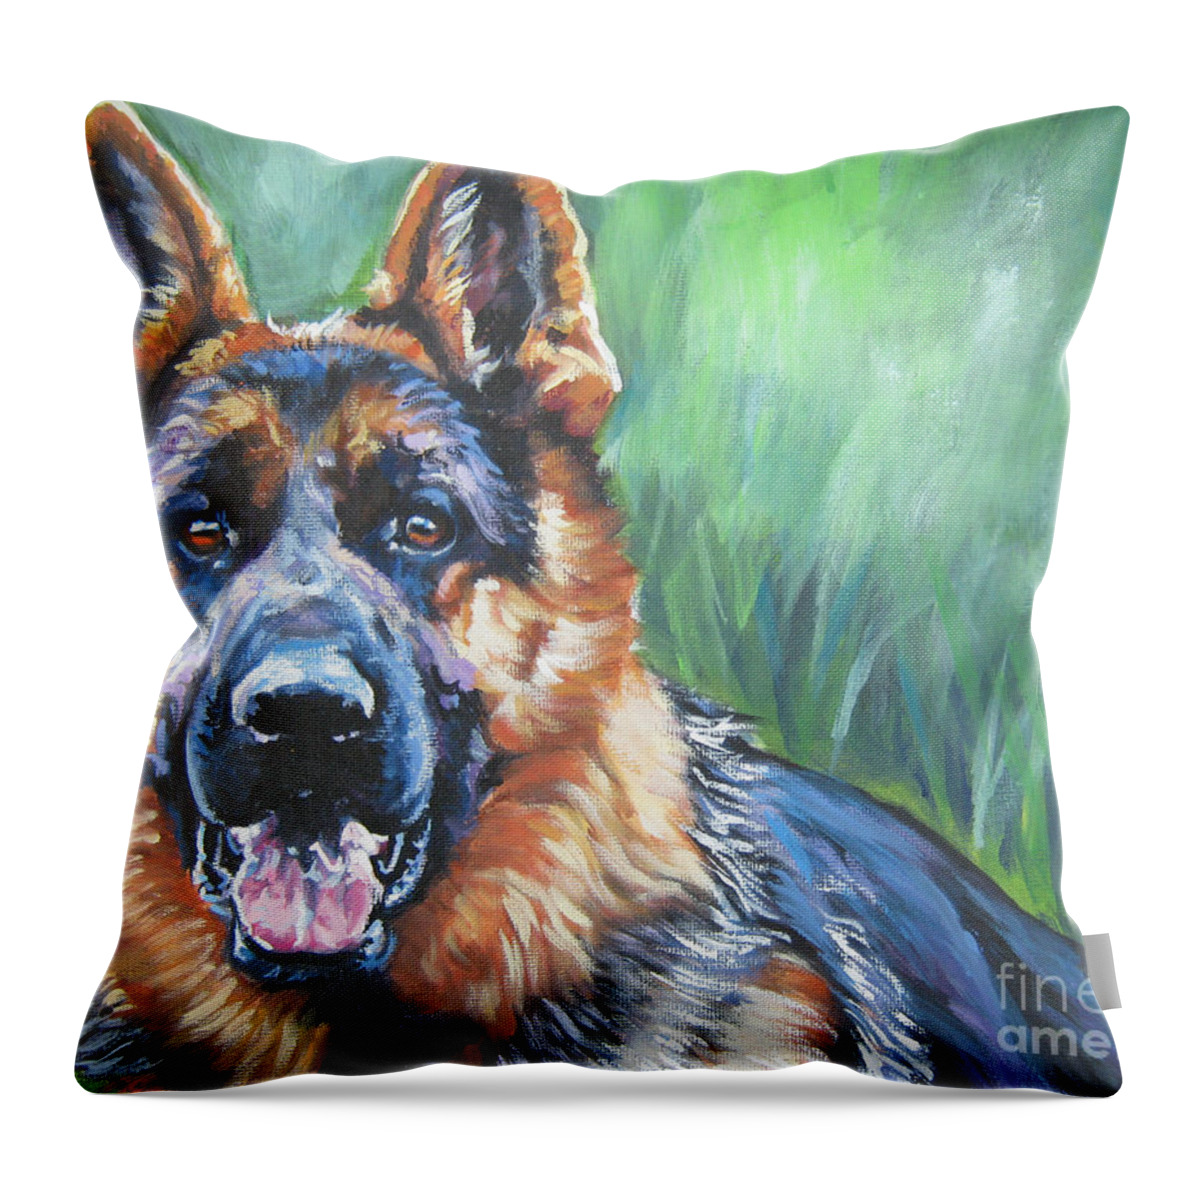 German Shepherd Throw Pillow featuring the painting German Shepherd by Lee Ann Shepard